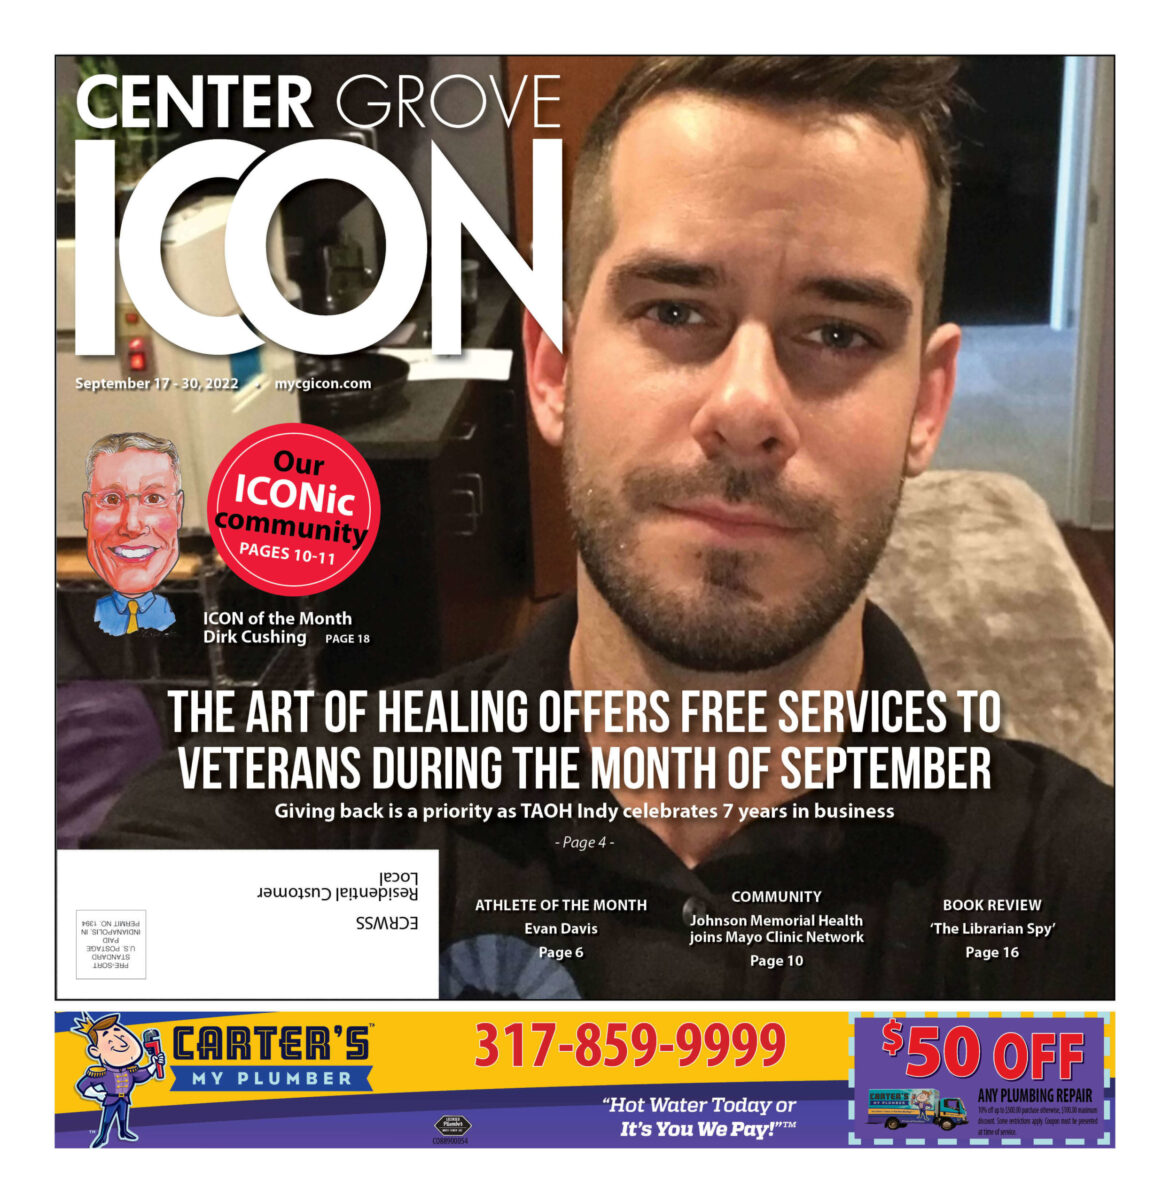 Center Grove ICON – Sept. 17-30, 2022